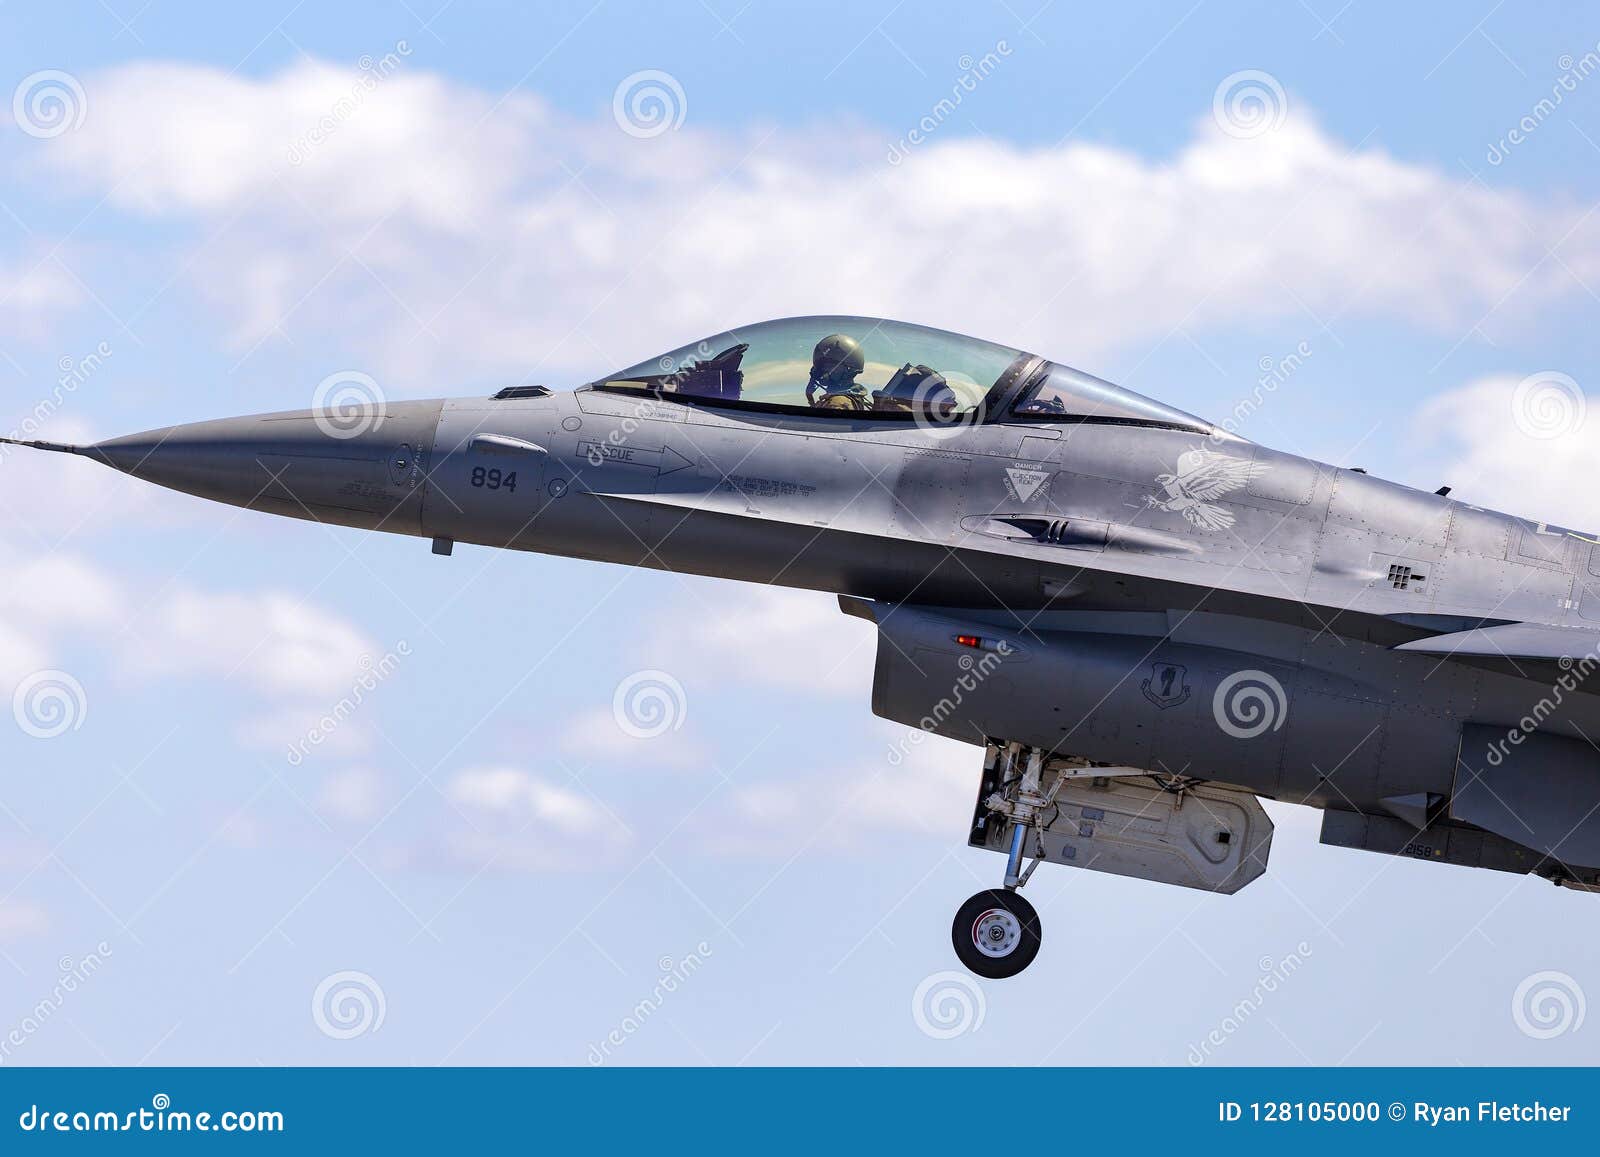 团结的staes空军队美国空军洛克希德f 16cj从第14个战斗中队的战隼92 34 第35个战斗机翼编辑类图片 图片包括有